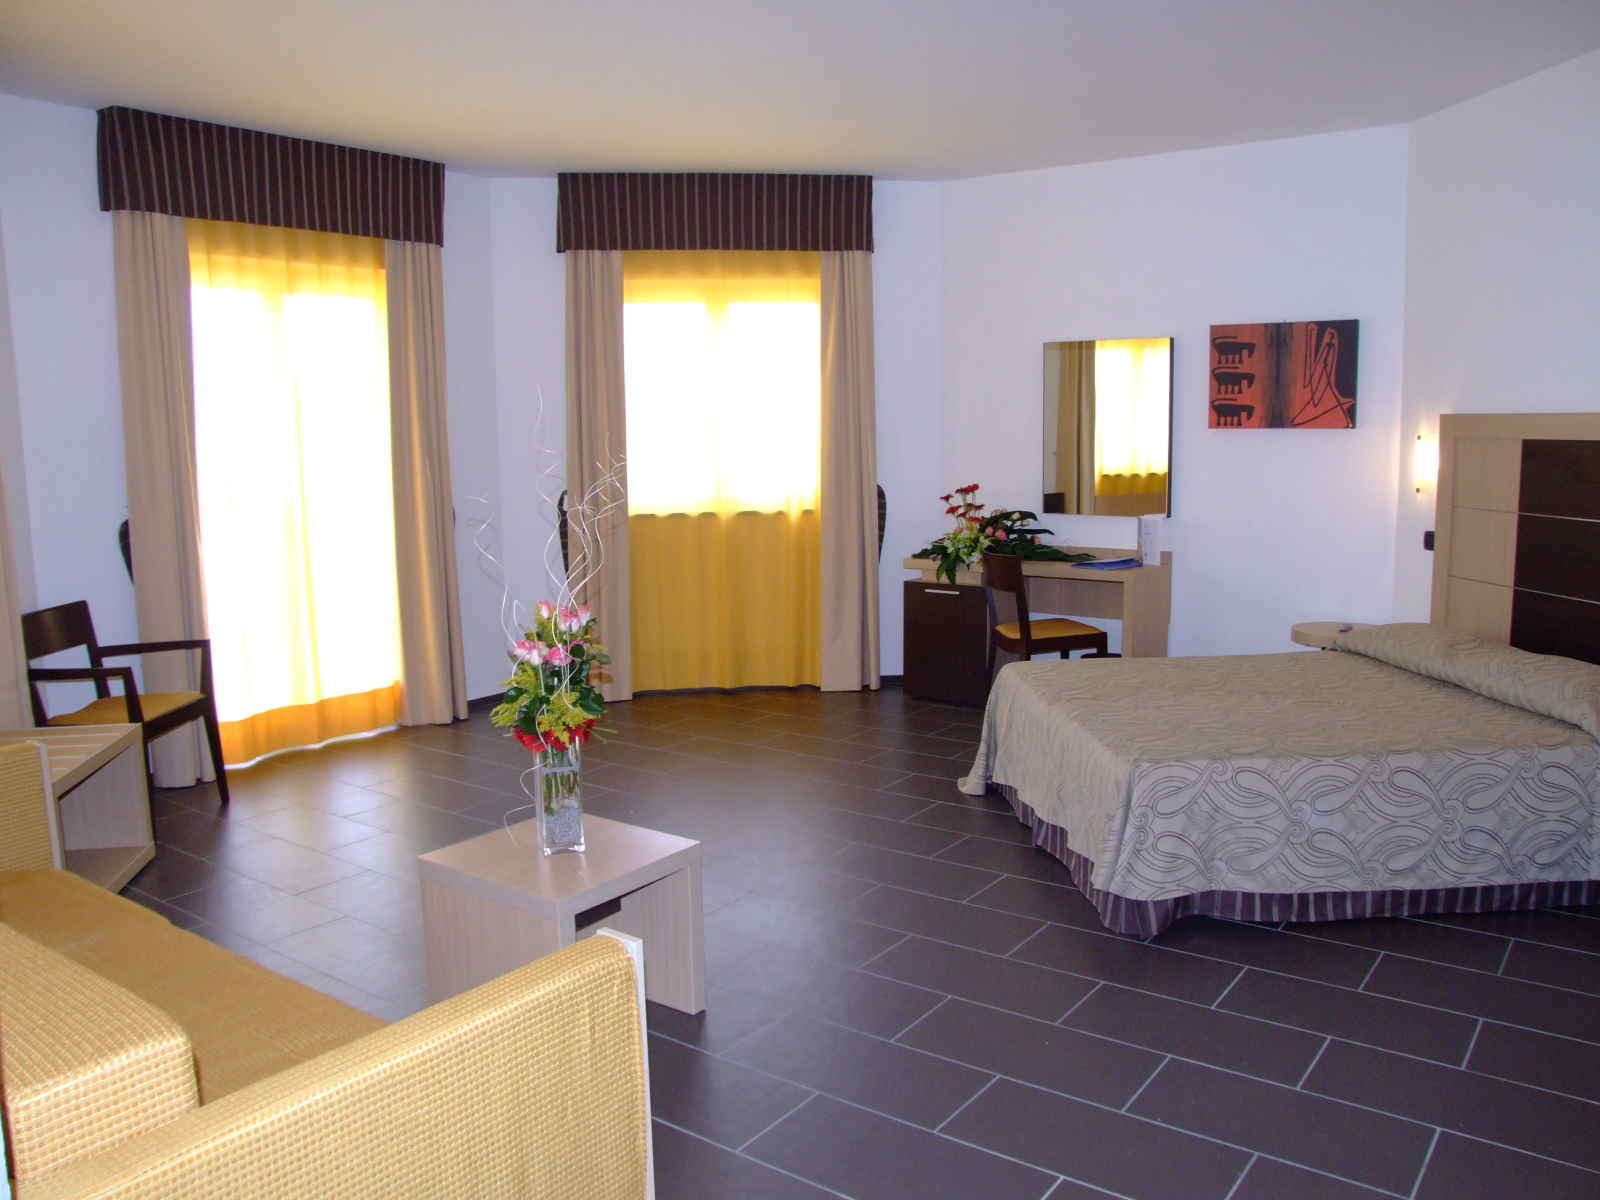 Italie - Sicile - Hôtel VOI Baia di Tindari Resort 4*